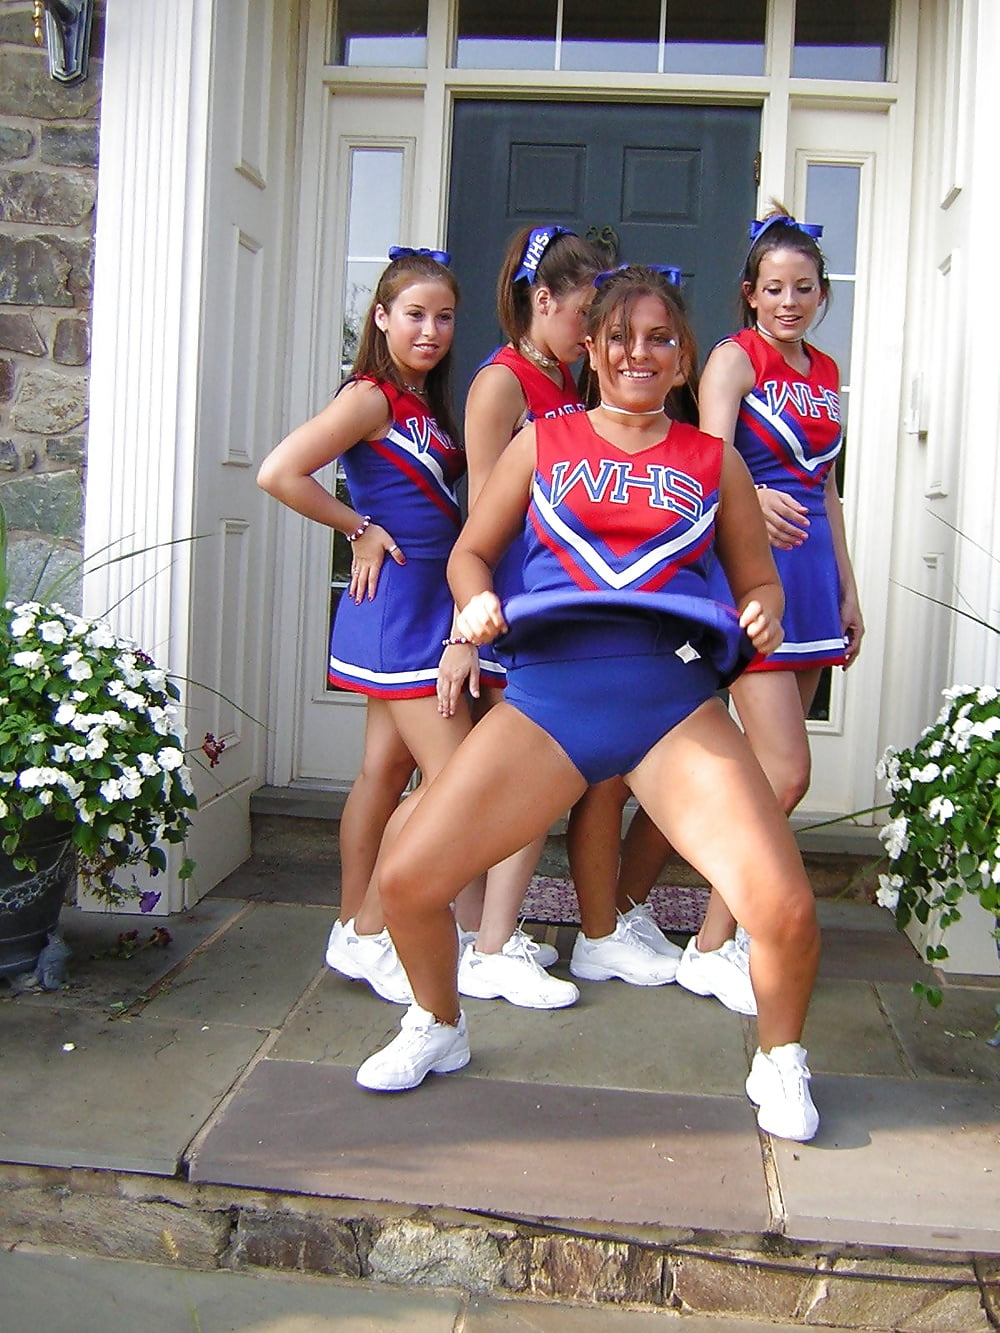 Hot College Cheerleaders Upskirt.